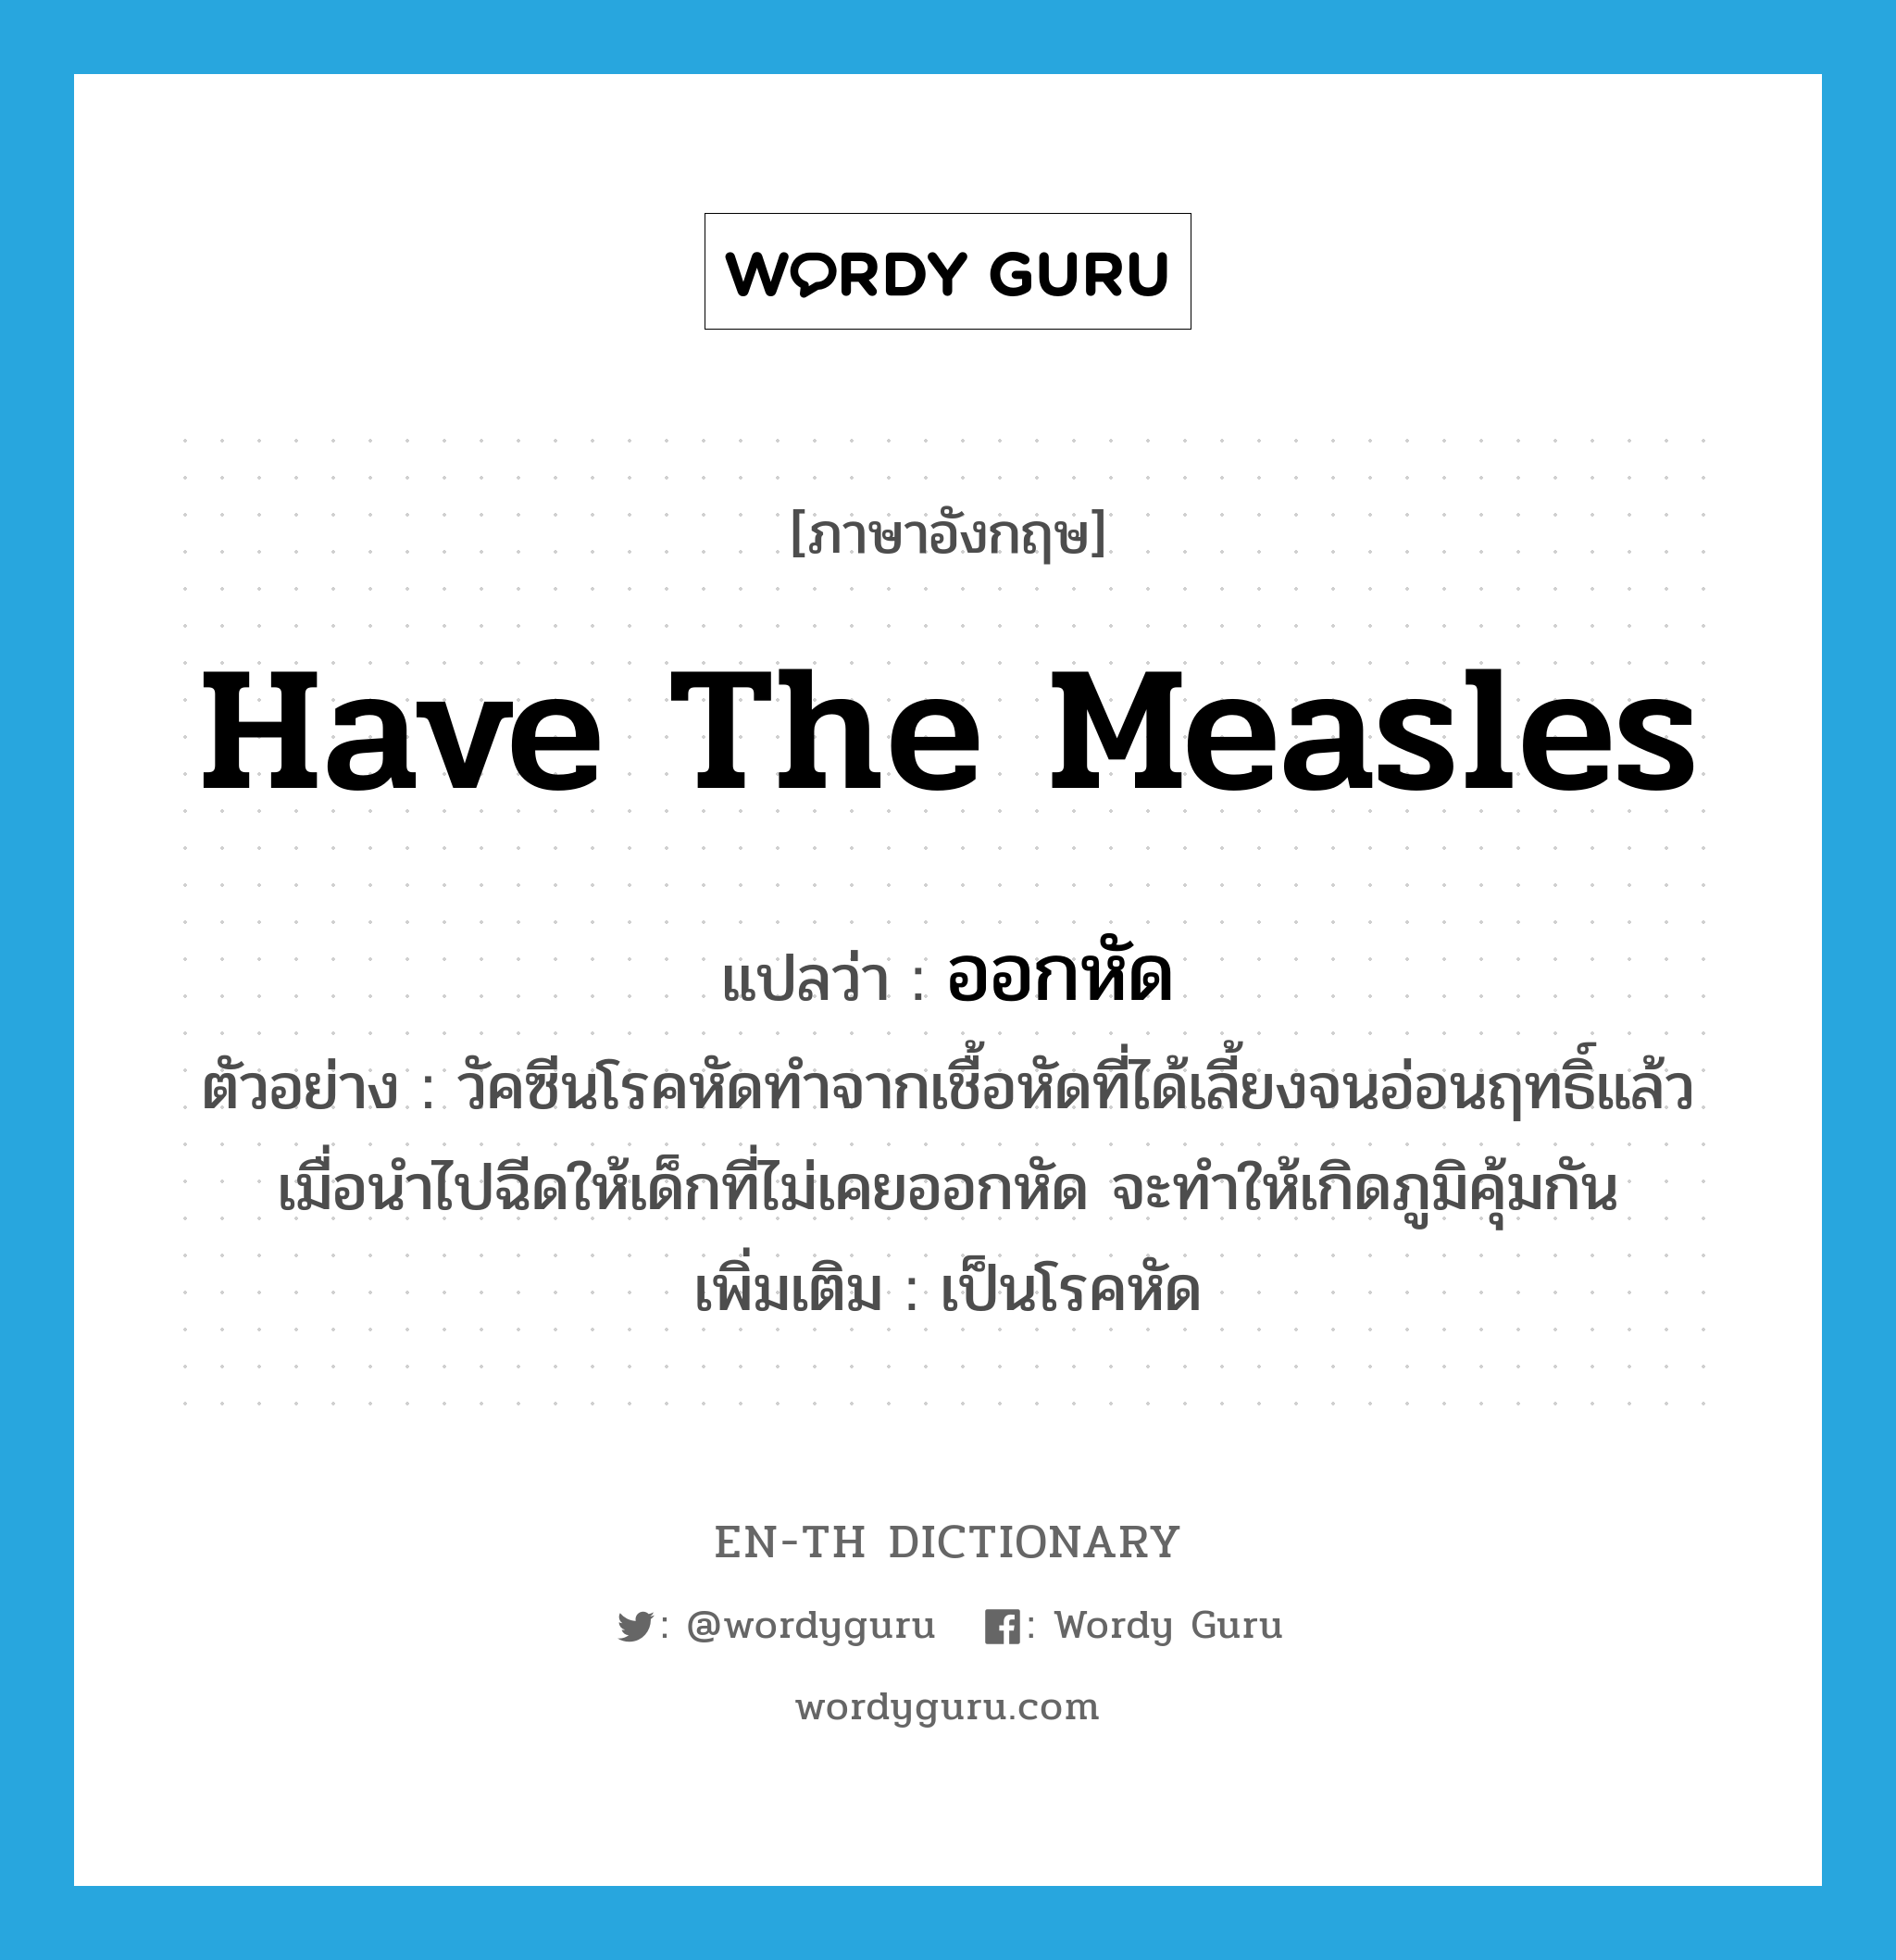 have the measles แปลว่า?, คำศัพท์ภาษาอังกฤษ have the measles แปลว่า ออกหัด ประเภท V ตัวอย่าง วัคซีนโรคหัดทำจากเชื้อหัดที่ได้เลี้ยงจนอ่อนฤทธิ์แล้ว เมื่อนำไปฉีดให้เด็กที่ไม่เคยออกหัด จะทำให้เกิดภูมิคุ้มกัน เพิ่มเติม เป็นโรคหัด หมวด V